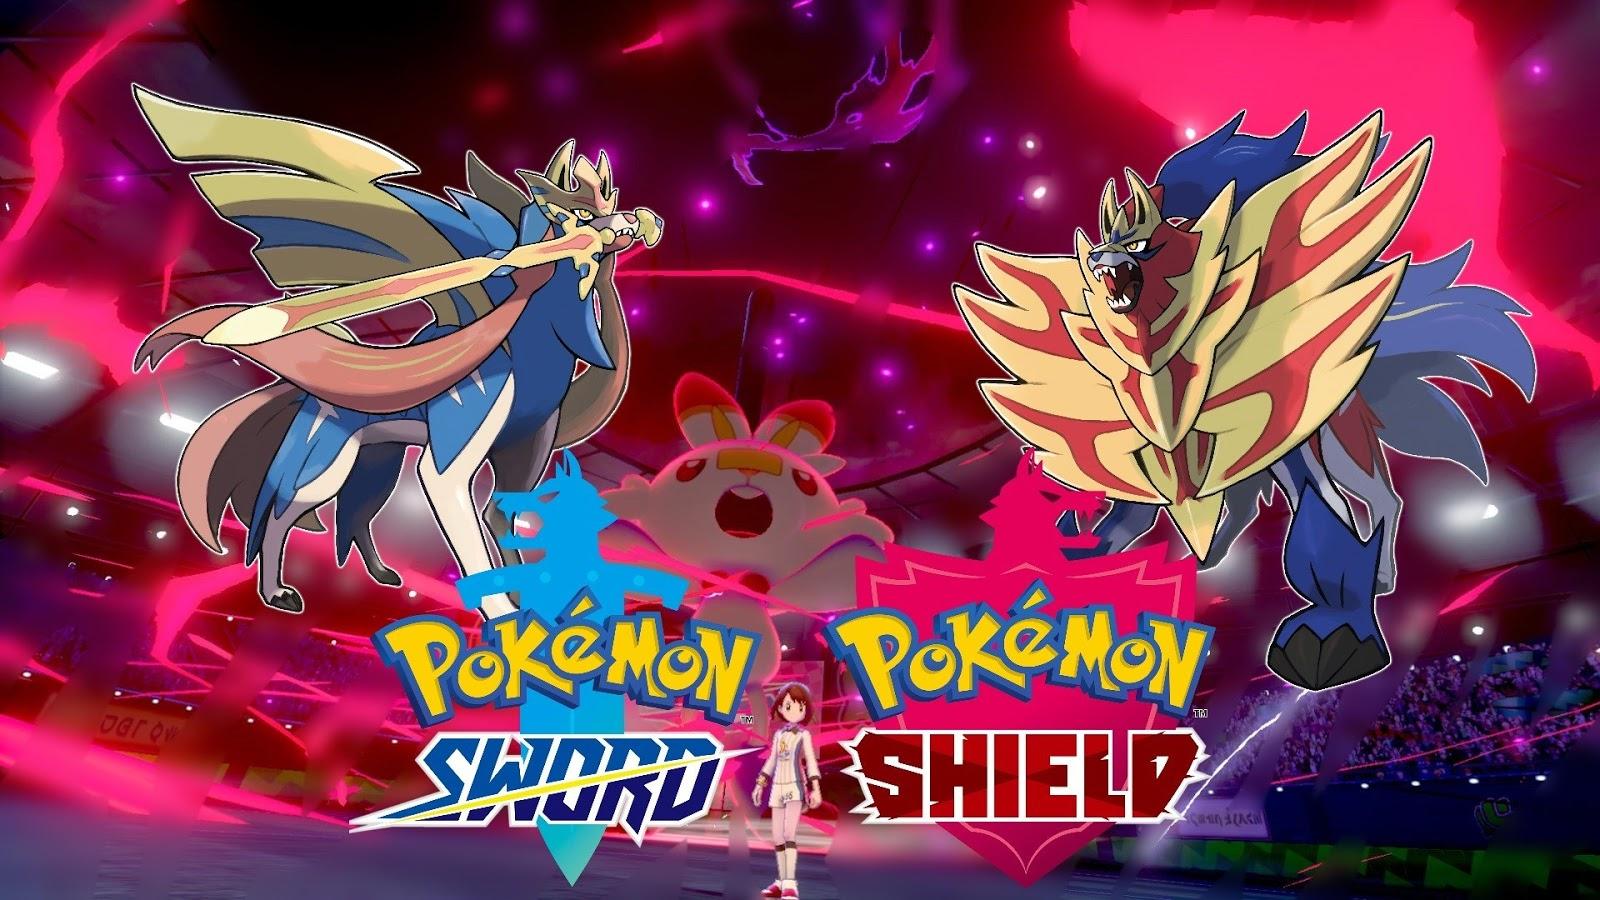 Pokémon Sword & Shield HD Wallpaper: Sword & Shield 4K